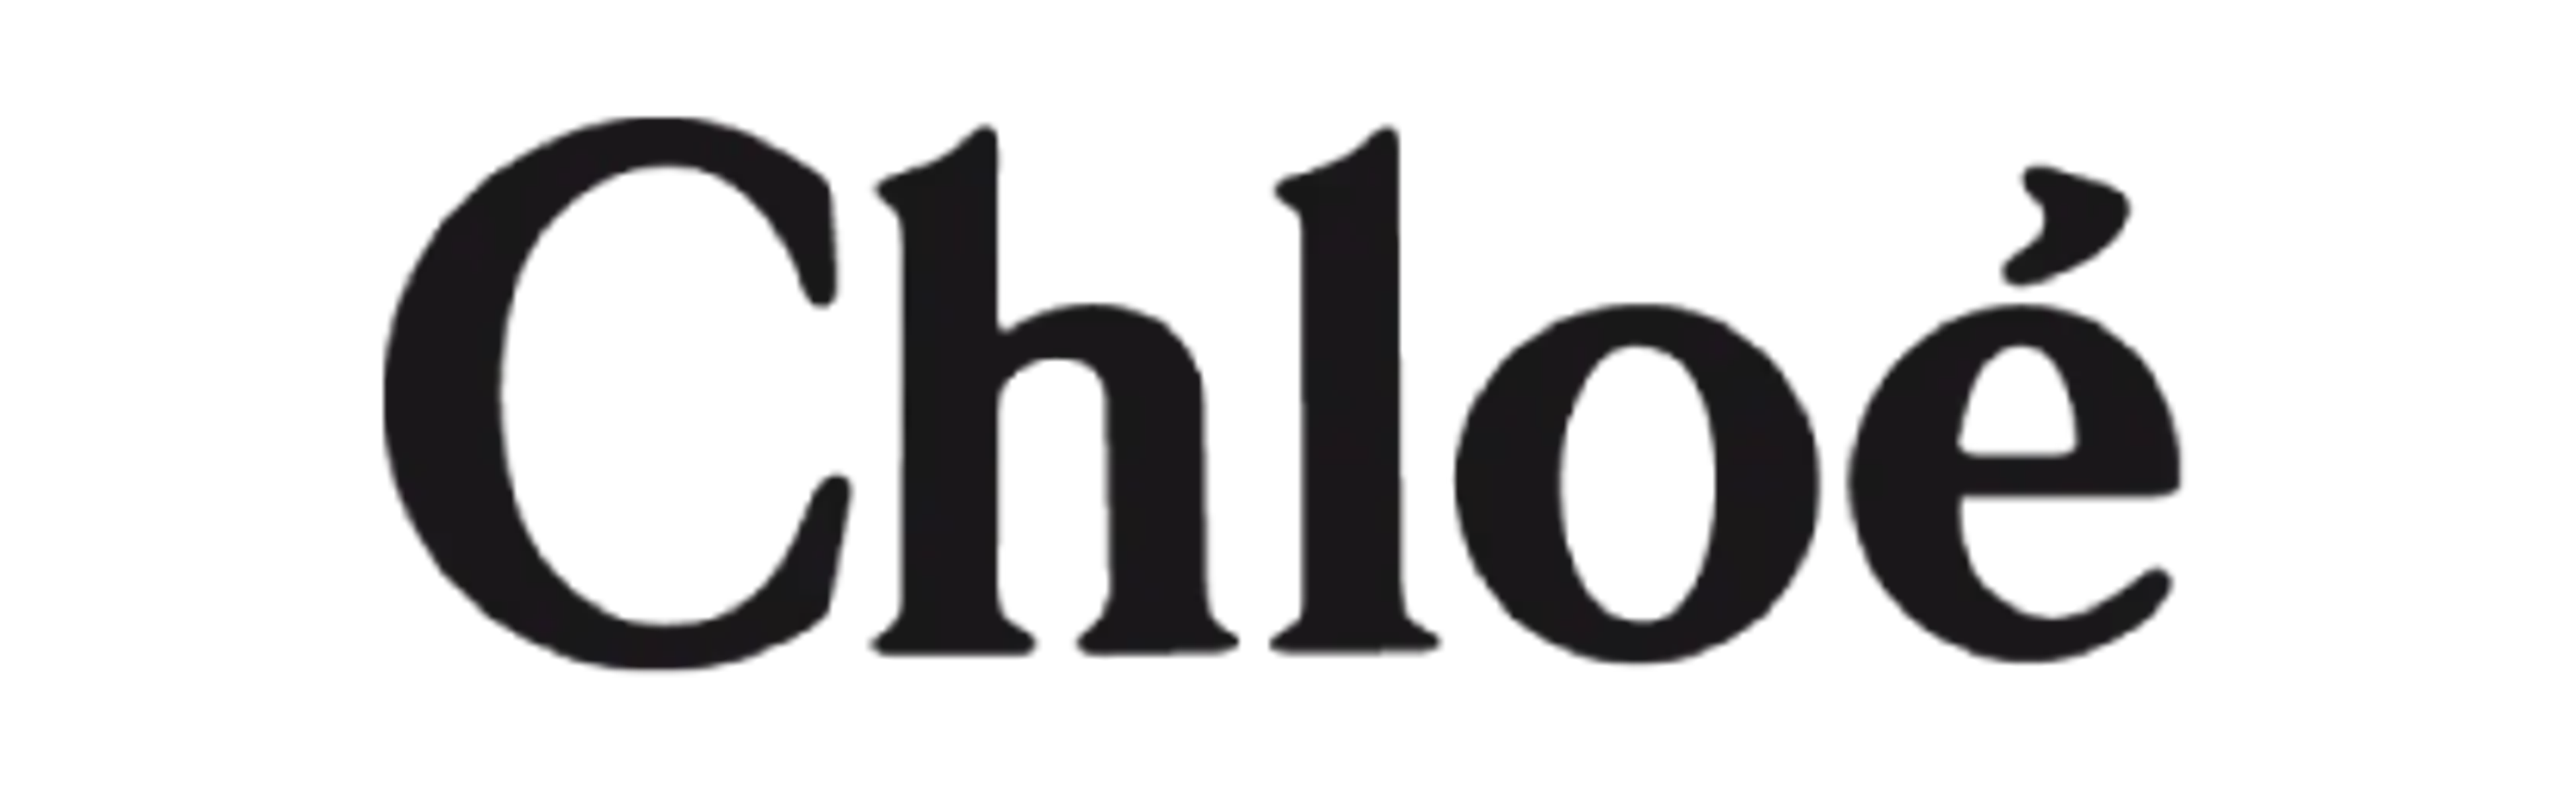 chloe-logo-v3.png